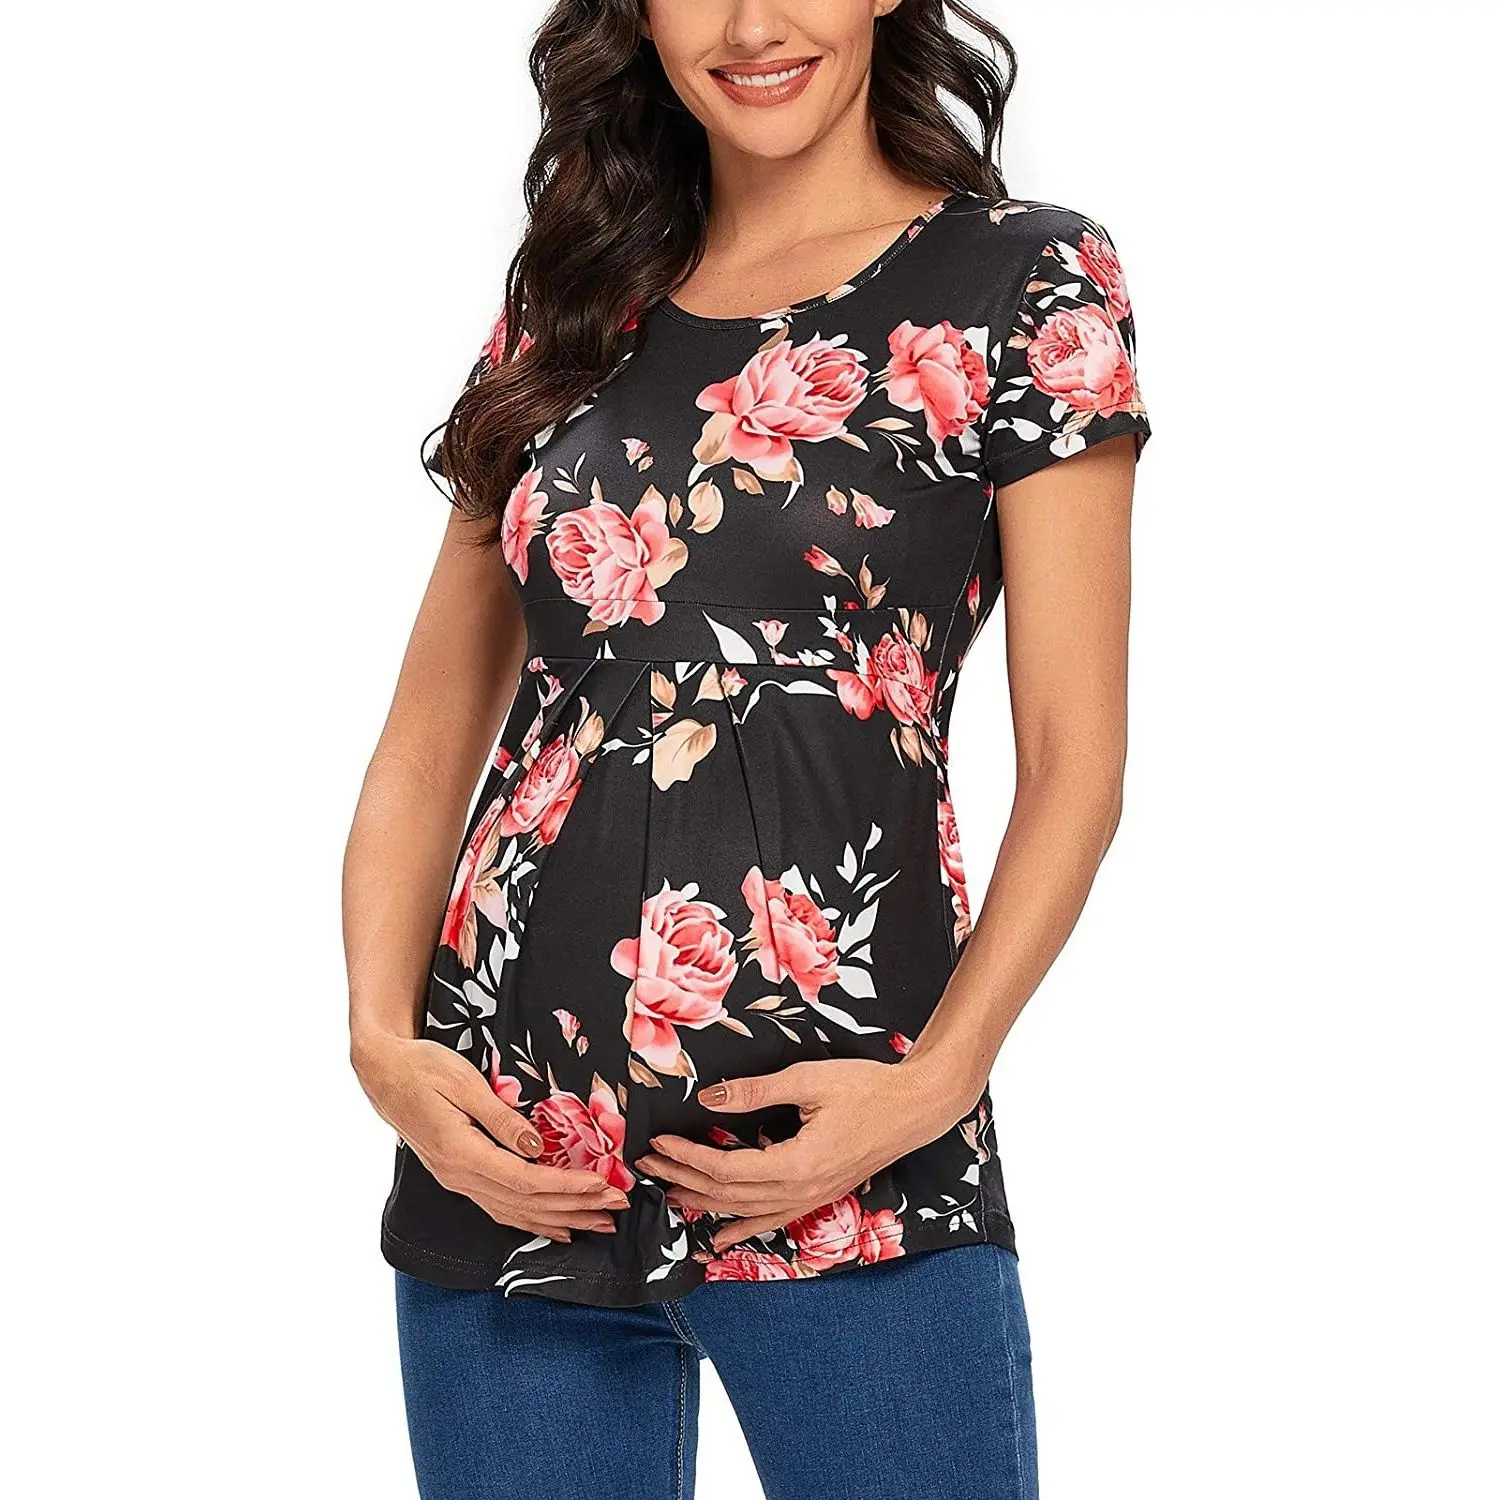 Yeni yazlık gömlek Kadın Hamile Üstleri Hamile Tank Top T Shirt Kadın Hemşirelik Giysileri Gebelik Rahat Anne Giysileri Harajuku Görüntü 5